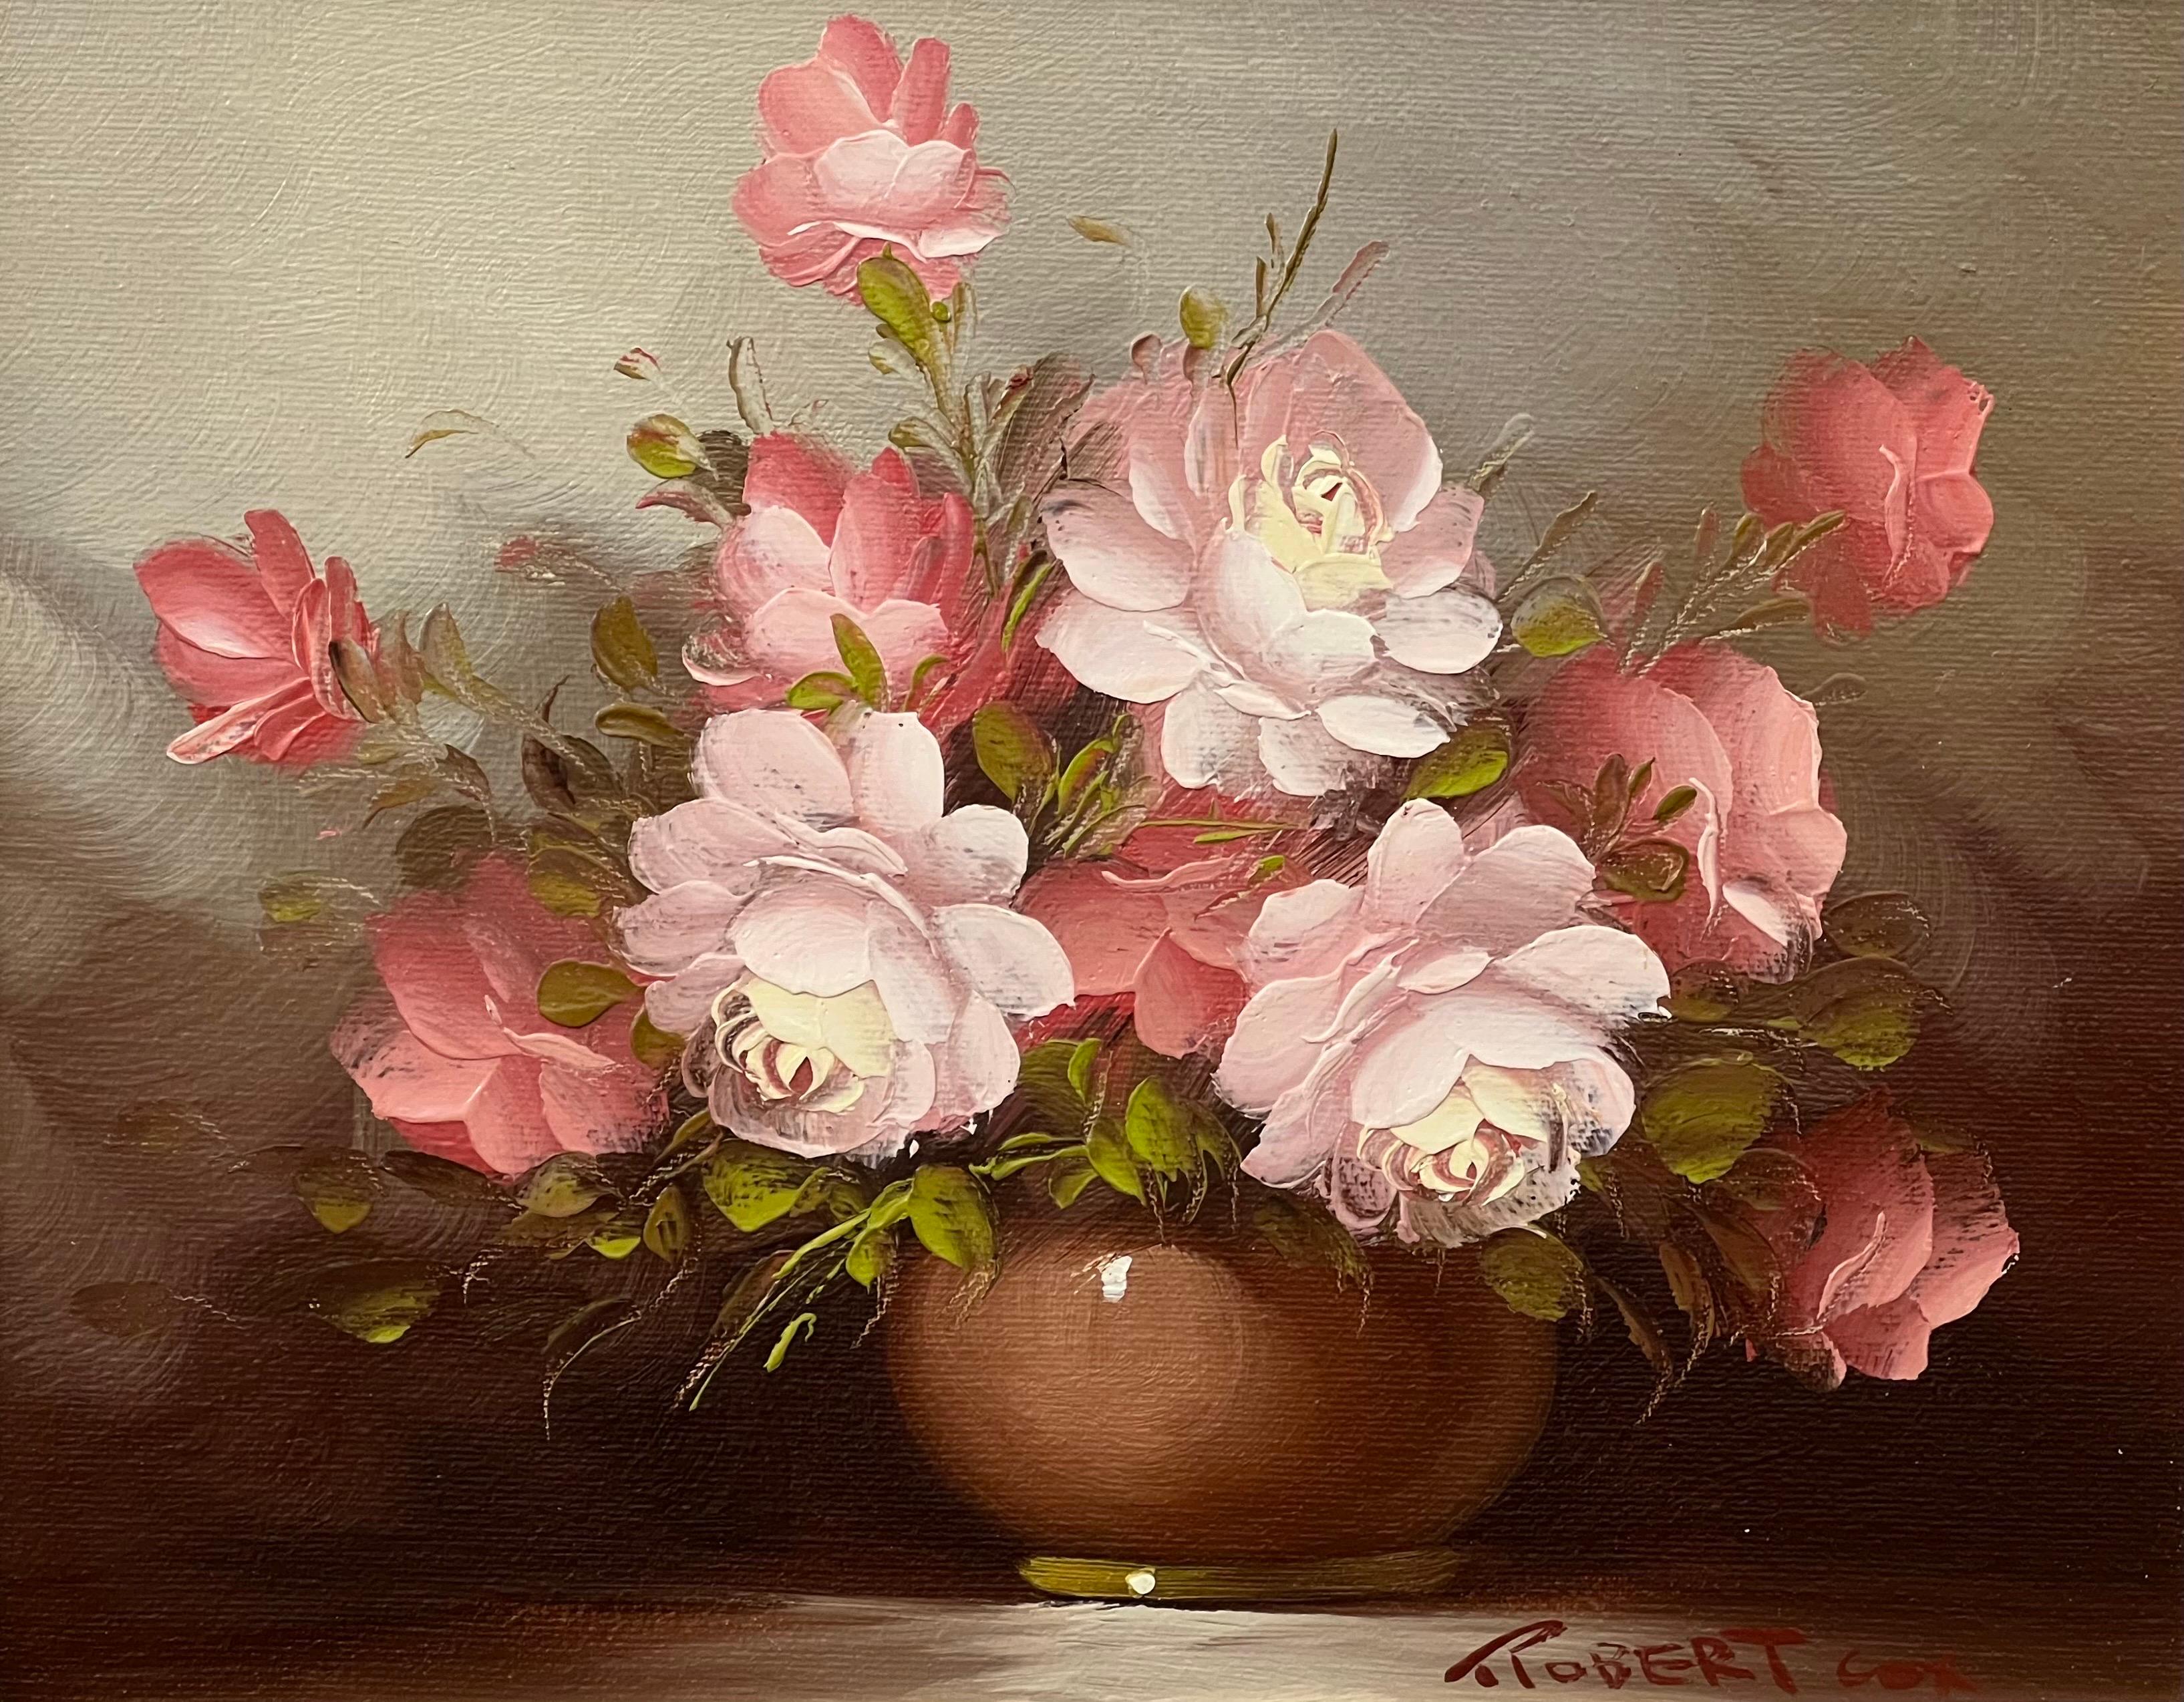 Stilleben einer Vase mit rosa, roten und weißen Rosen des amerikanischen Künstlers des 20. Jahrhunderts, Robert Cox (1934-2001)

Kunst misst 7,5 x 9,5 Zoll (ungerahmt)
Einrahmung nach Vereinbarung

Der preisgekrönte amerikanische Künstler Robert Cox